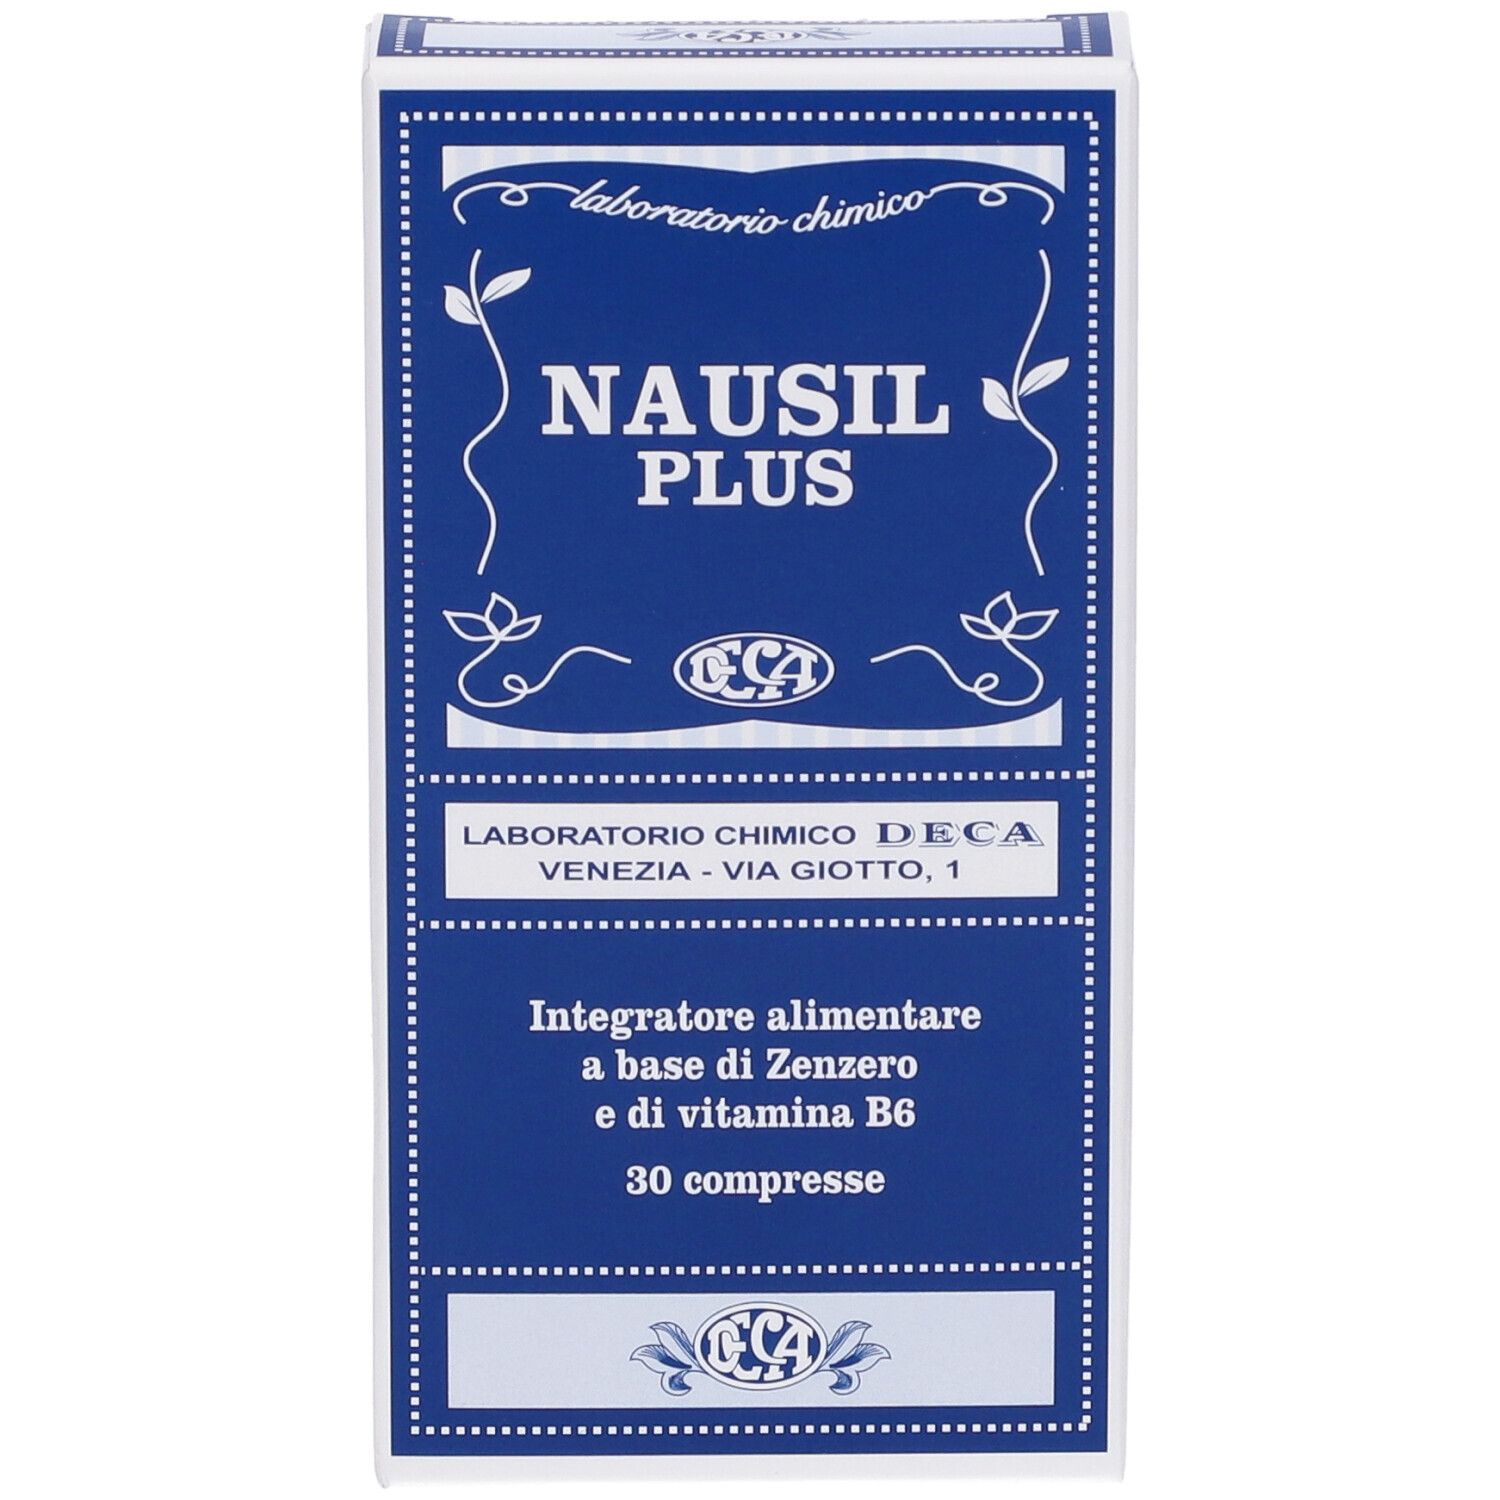 Nausil Plus